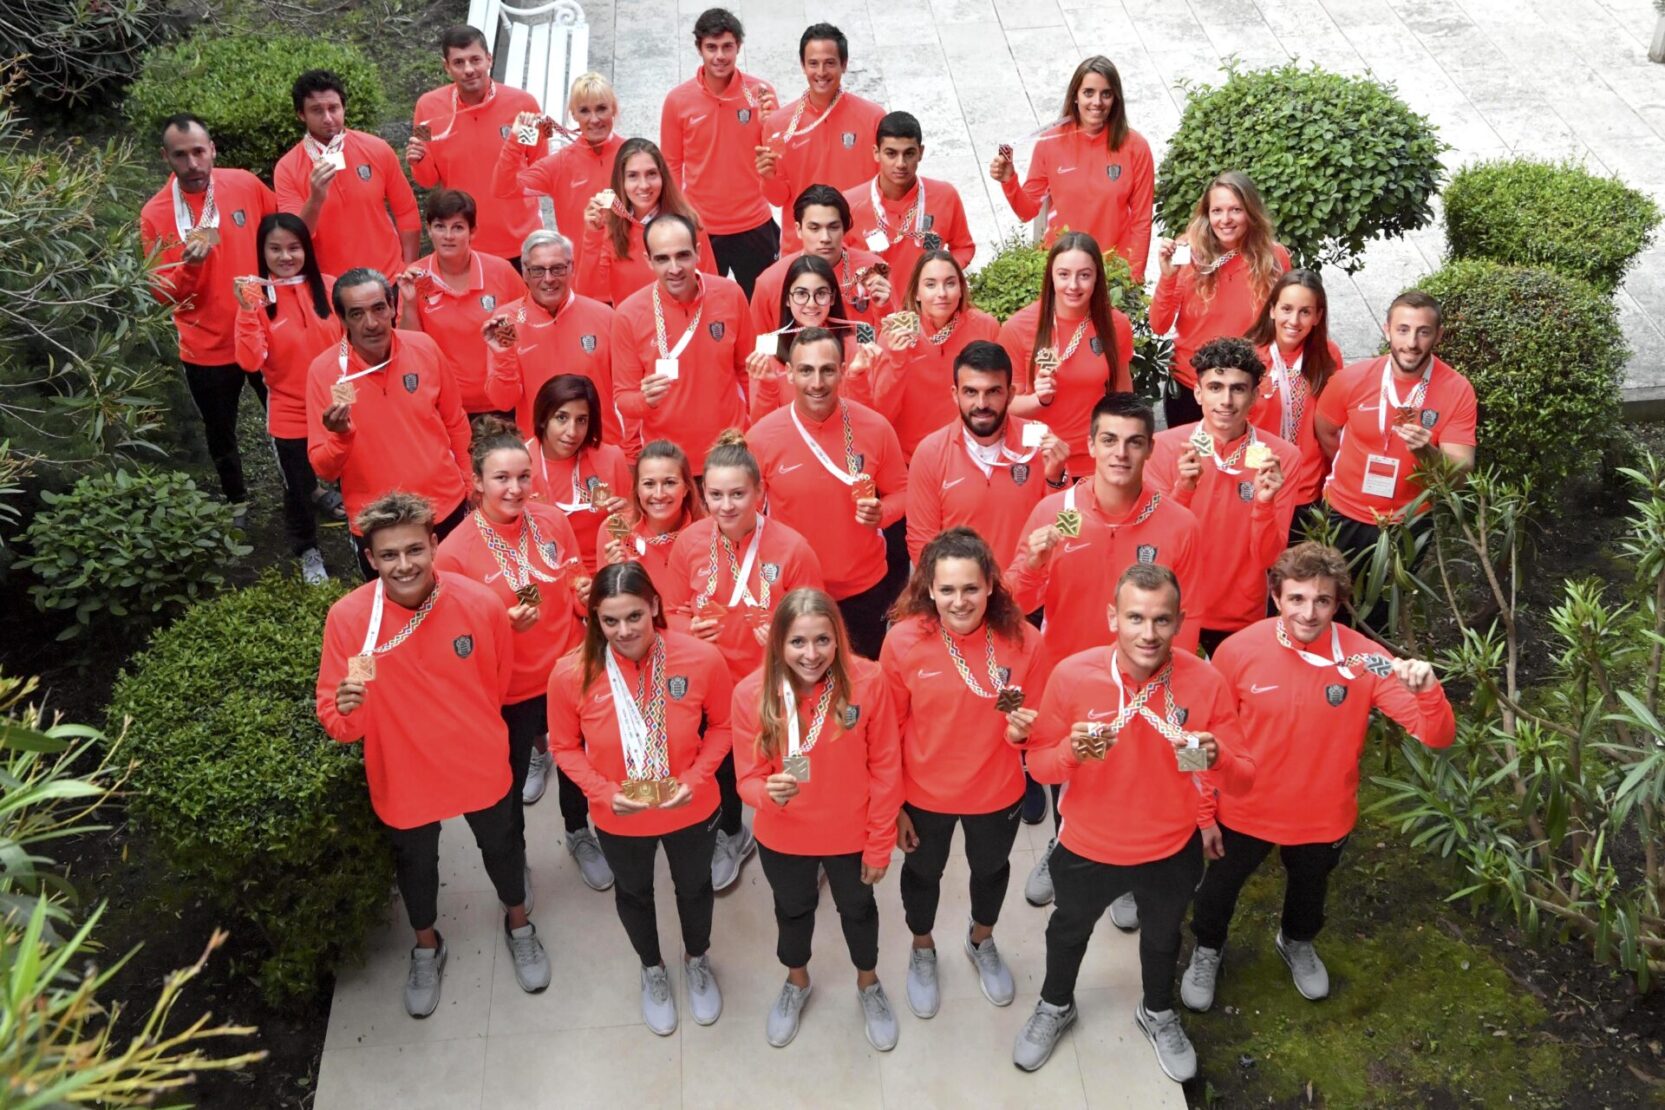 Les médaillés monégasques aux Jeux des petits Etats d'Europe 2019.